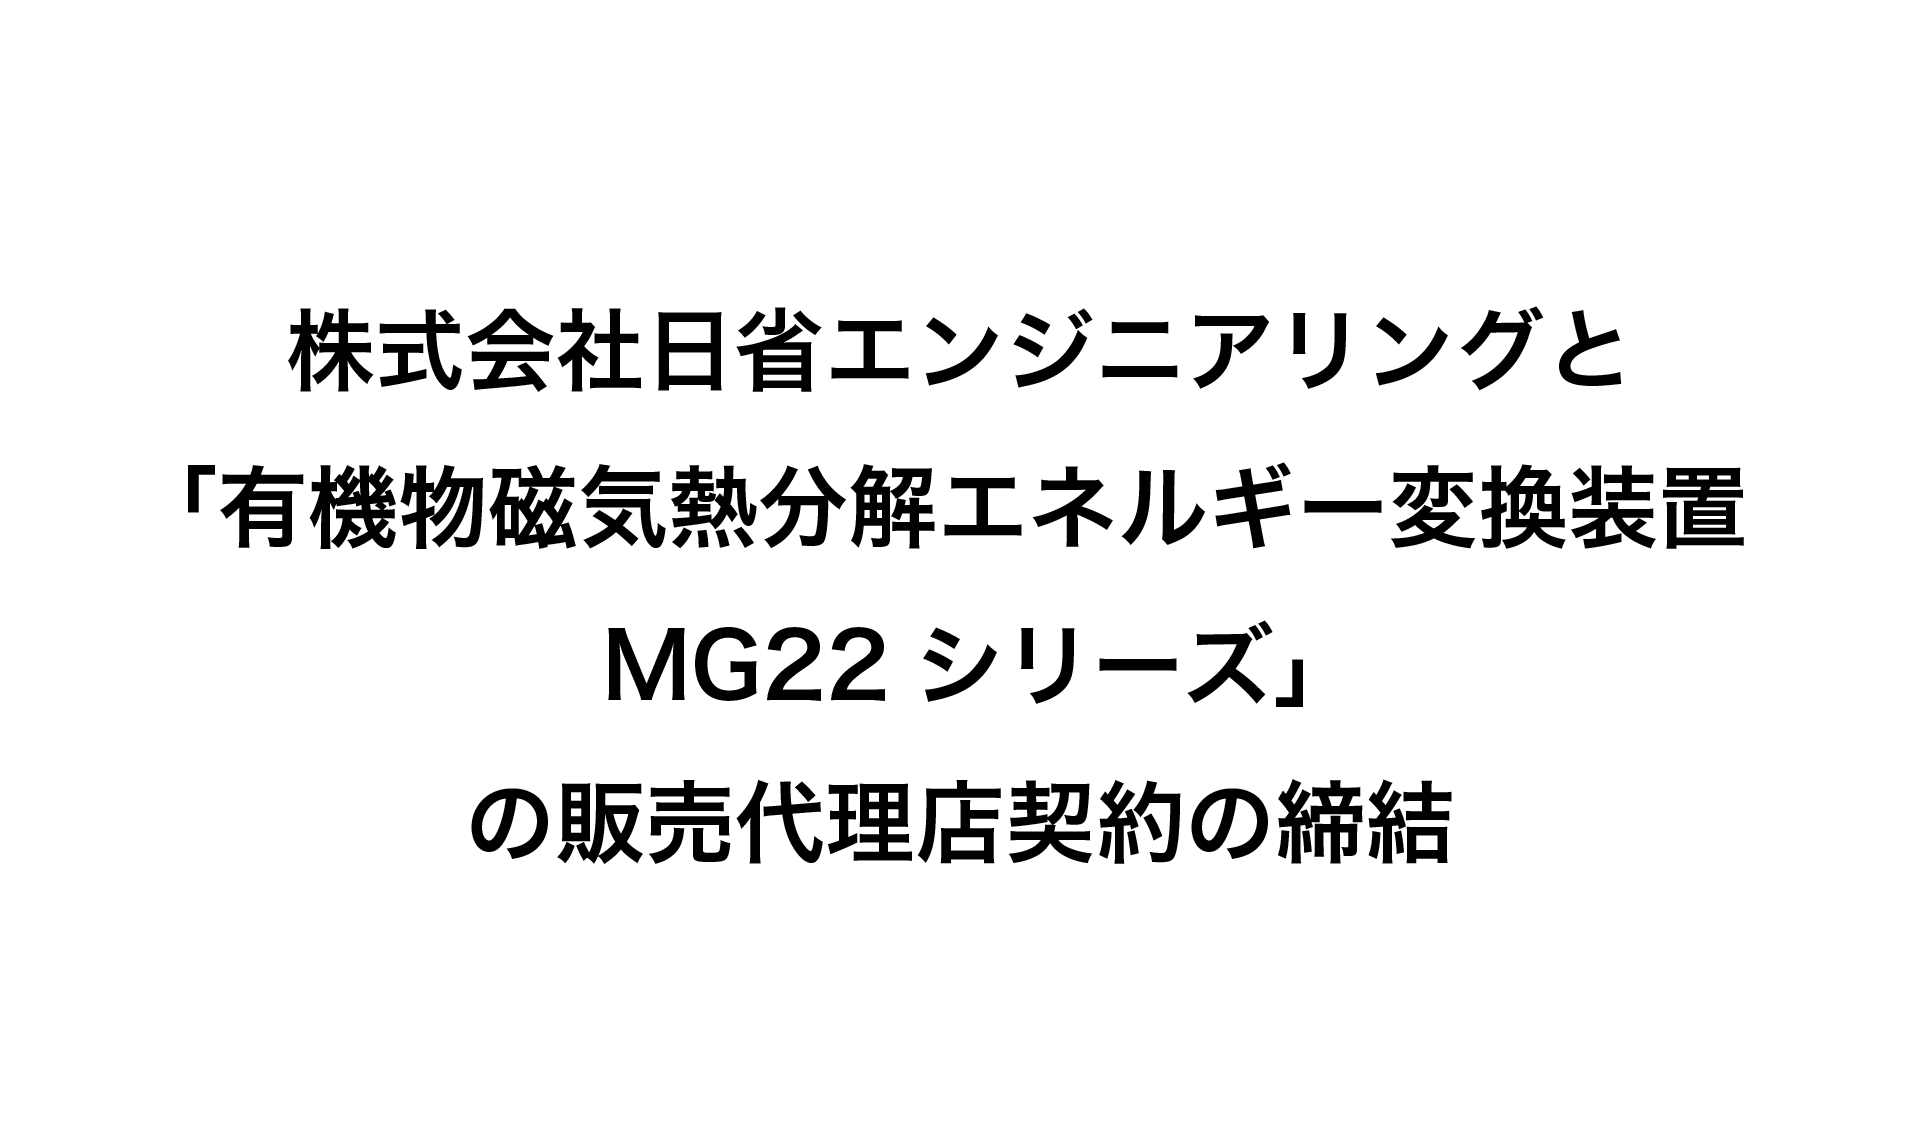 有機物磁気熱分解エネルギー変換装置MG22シリーズ の販売代理店契約を締結いたしました